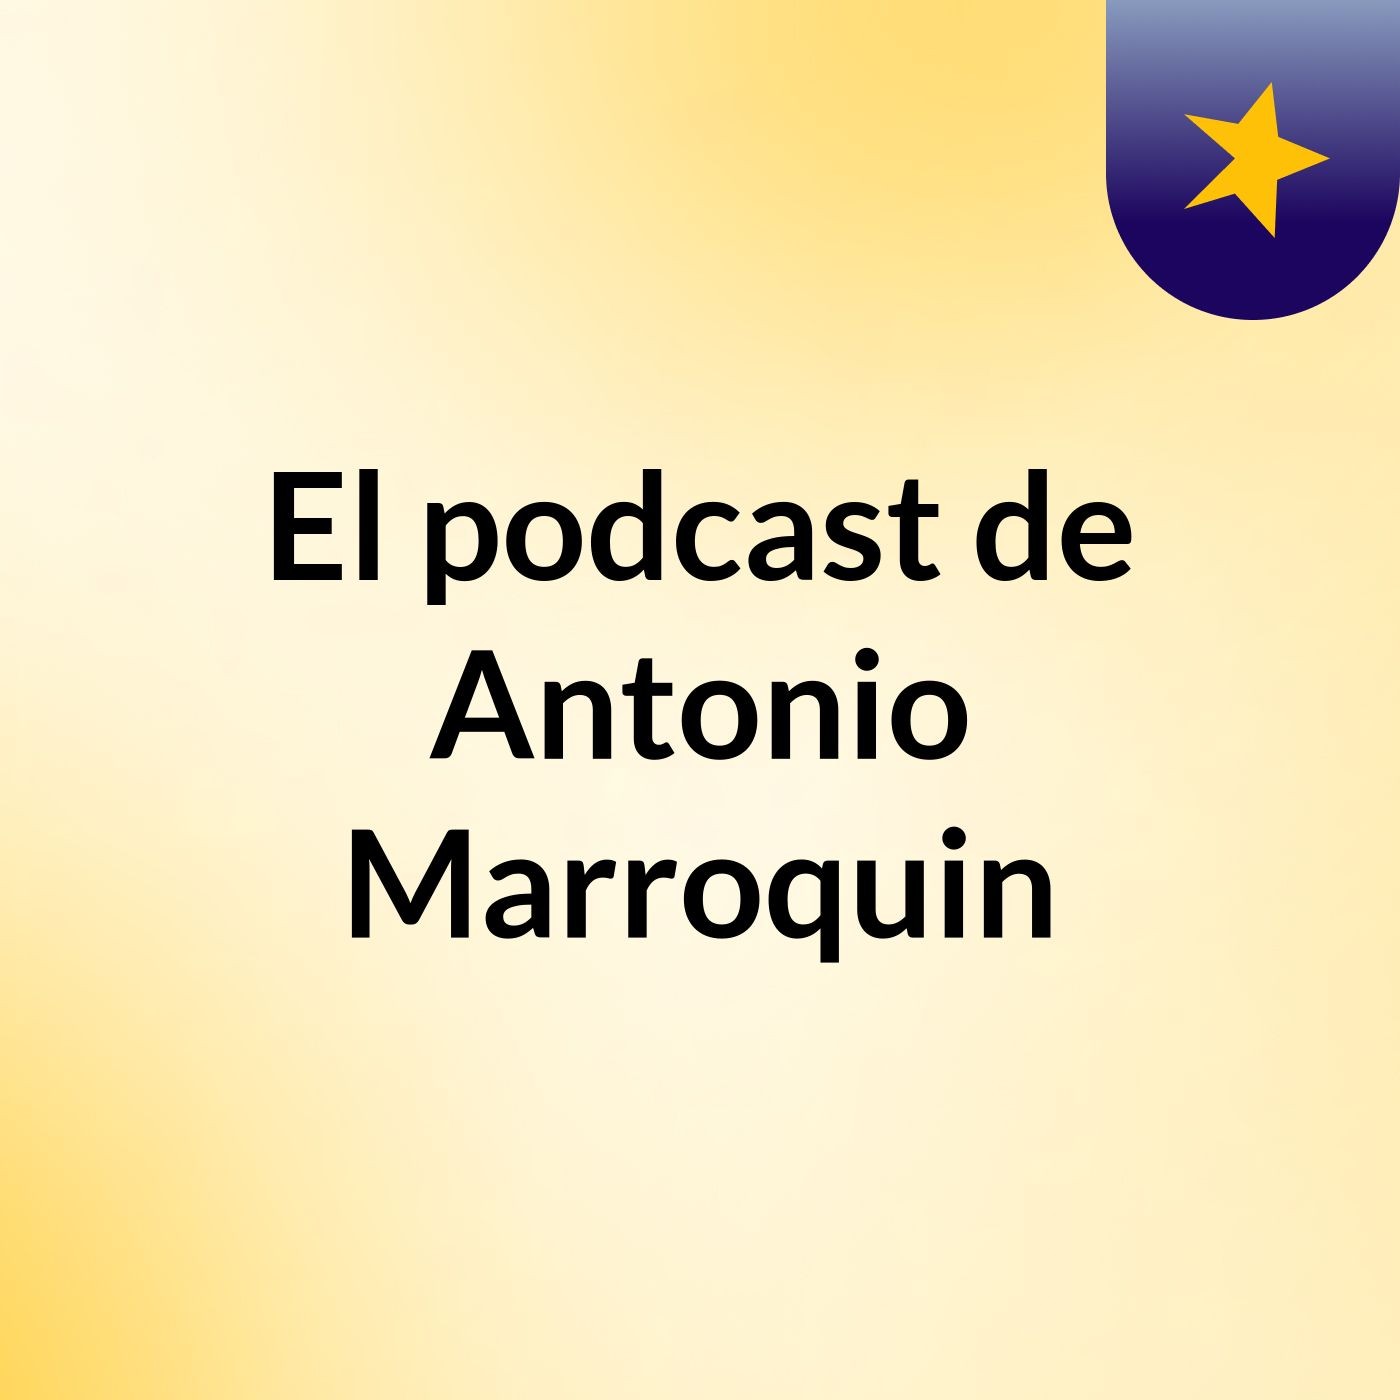 El podcast de Antonio Marroquin